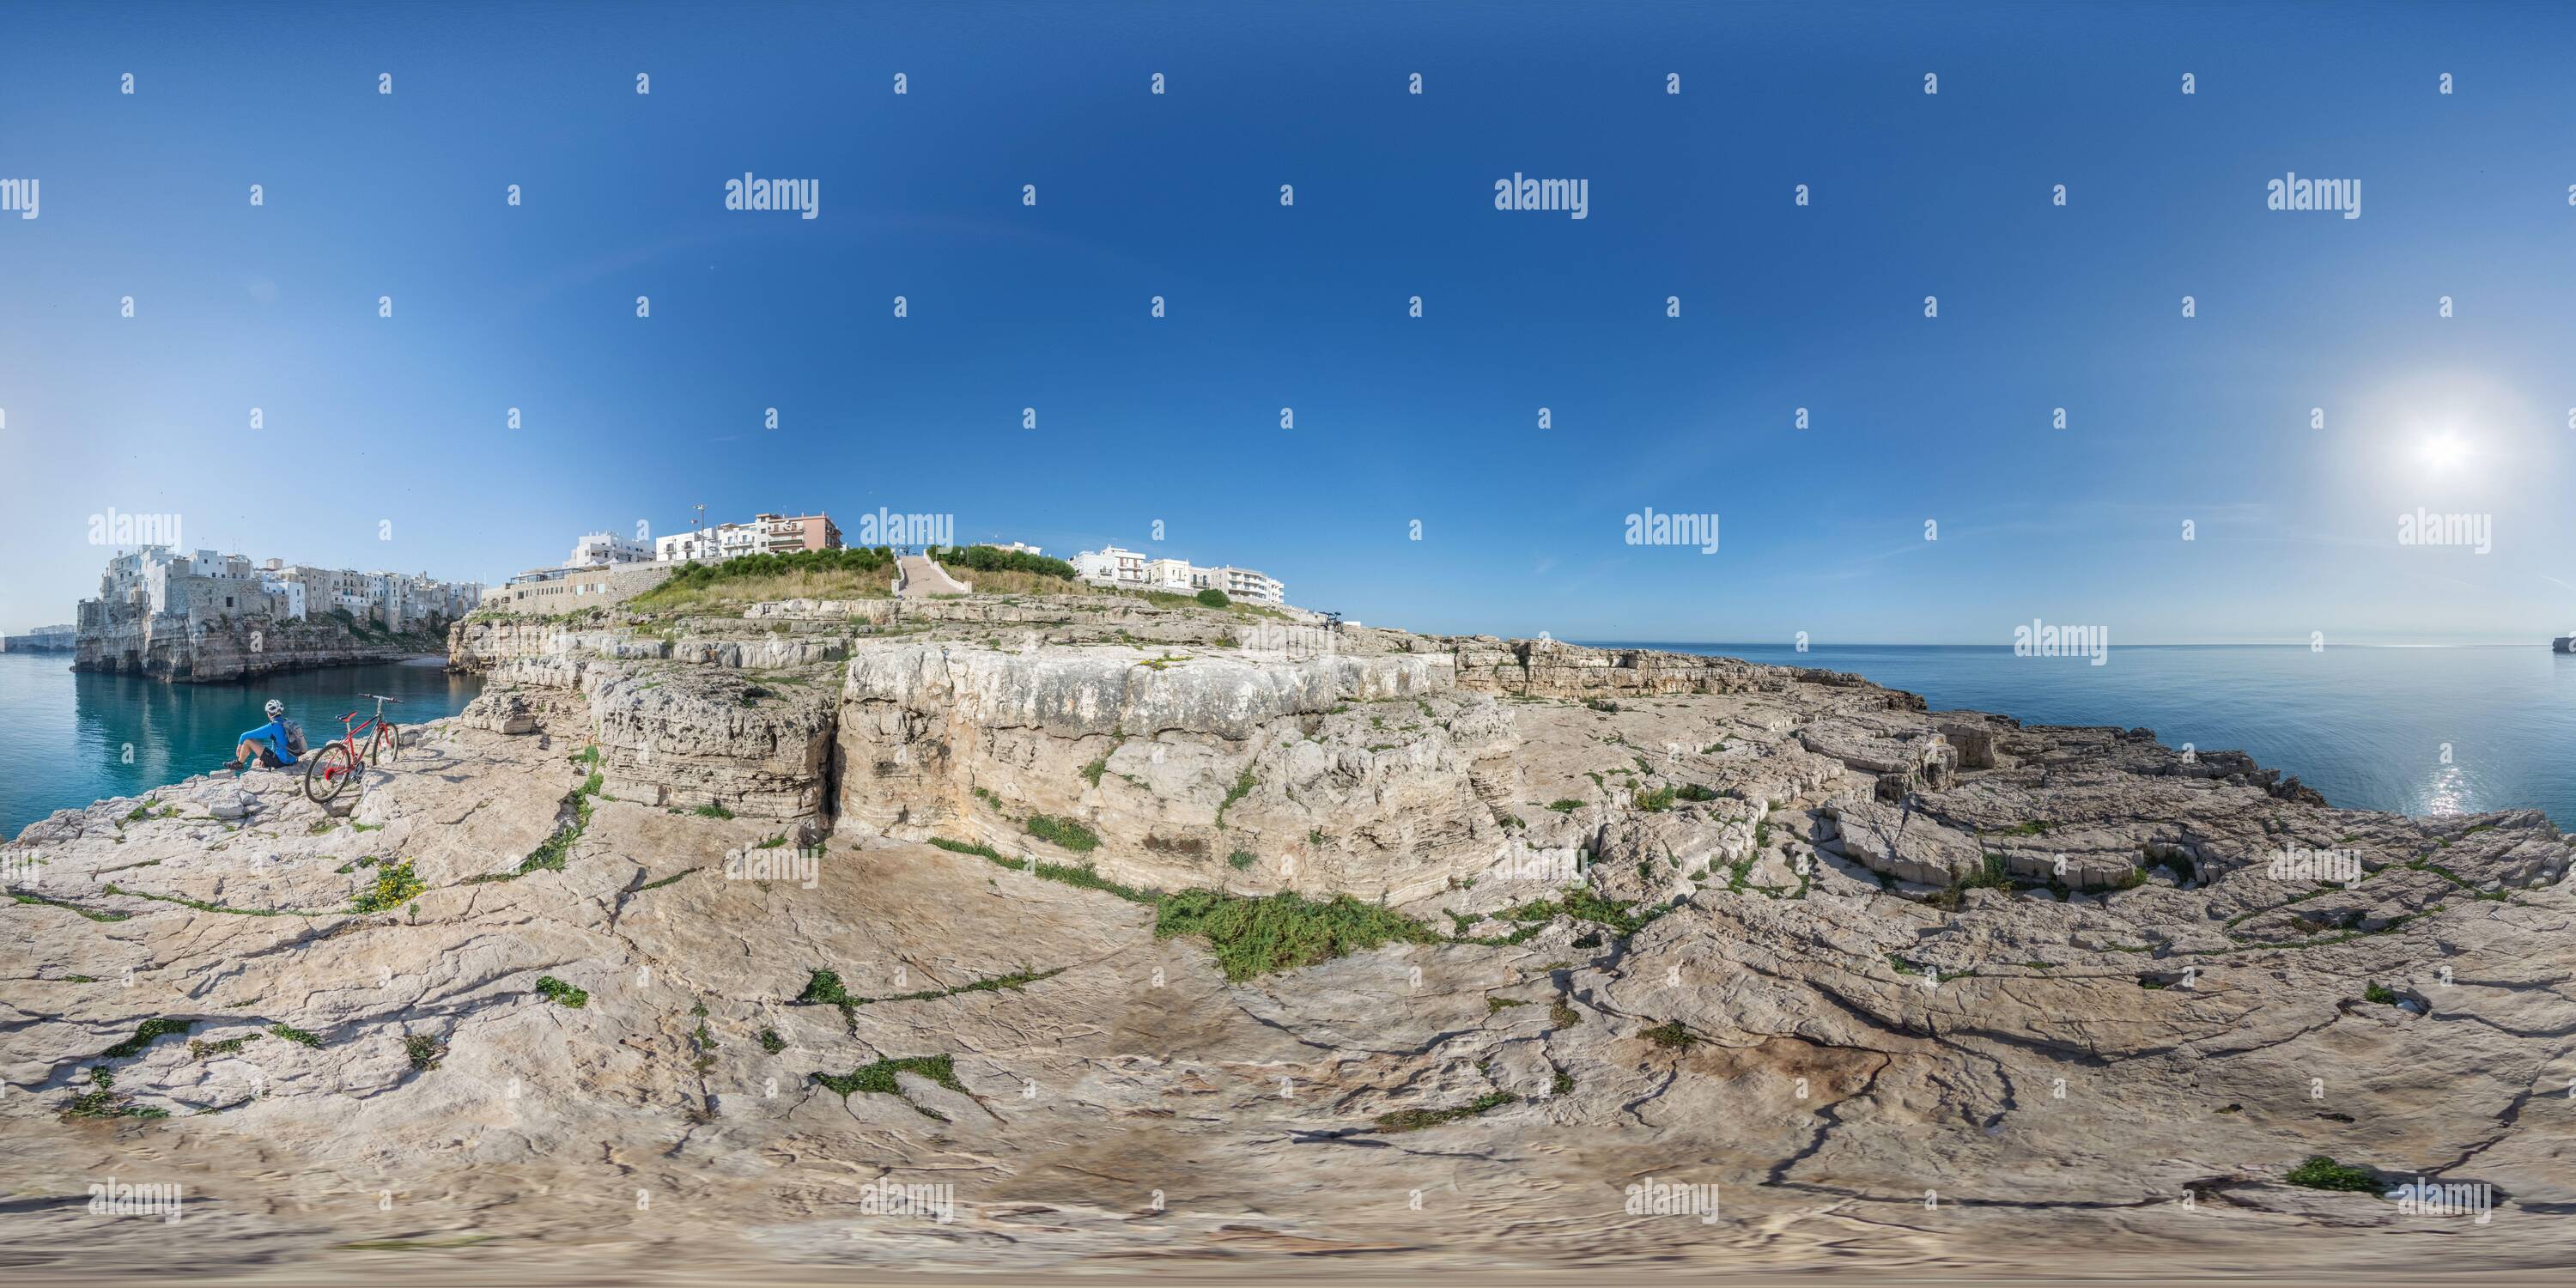 Visualizzazione panoramica a 360 gradi di polignano a mare in mountain bike